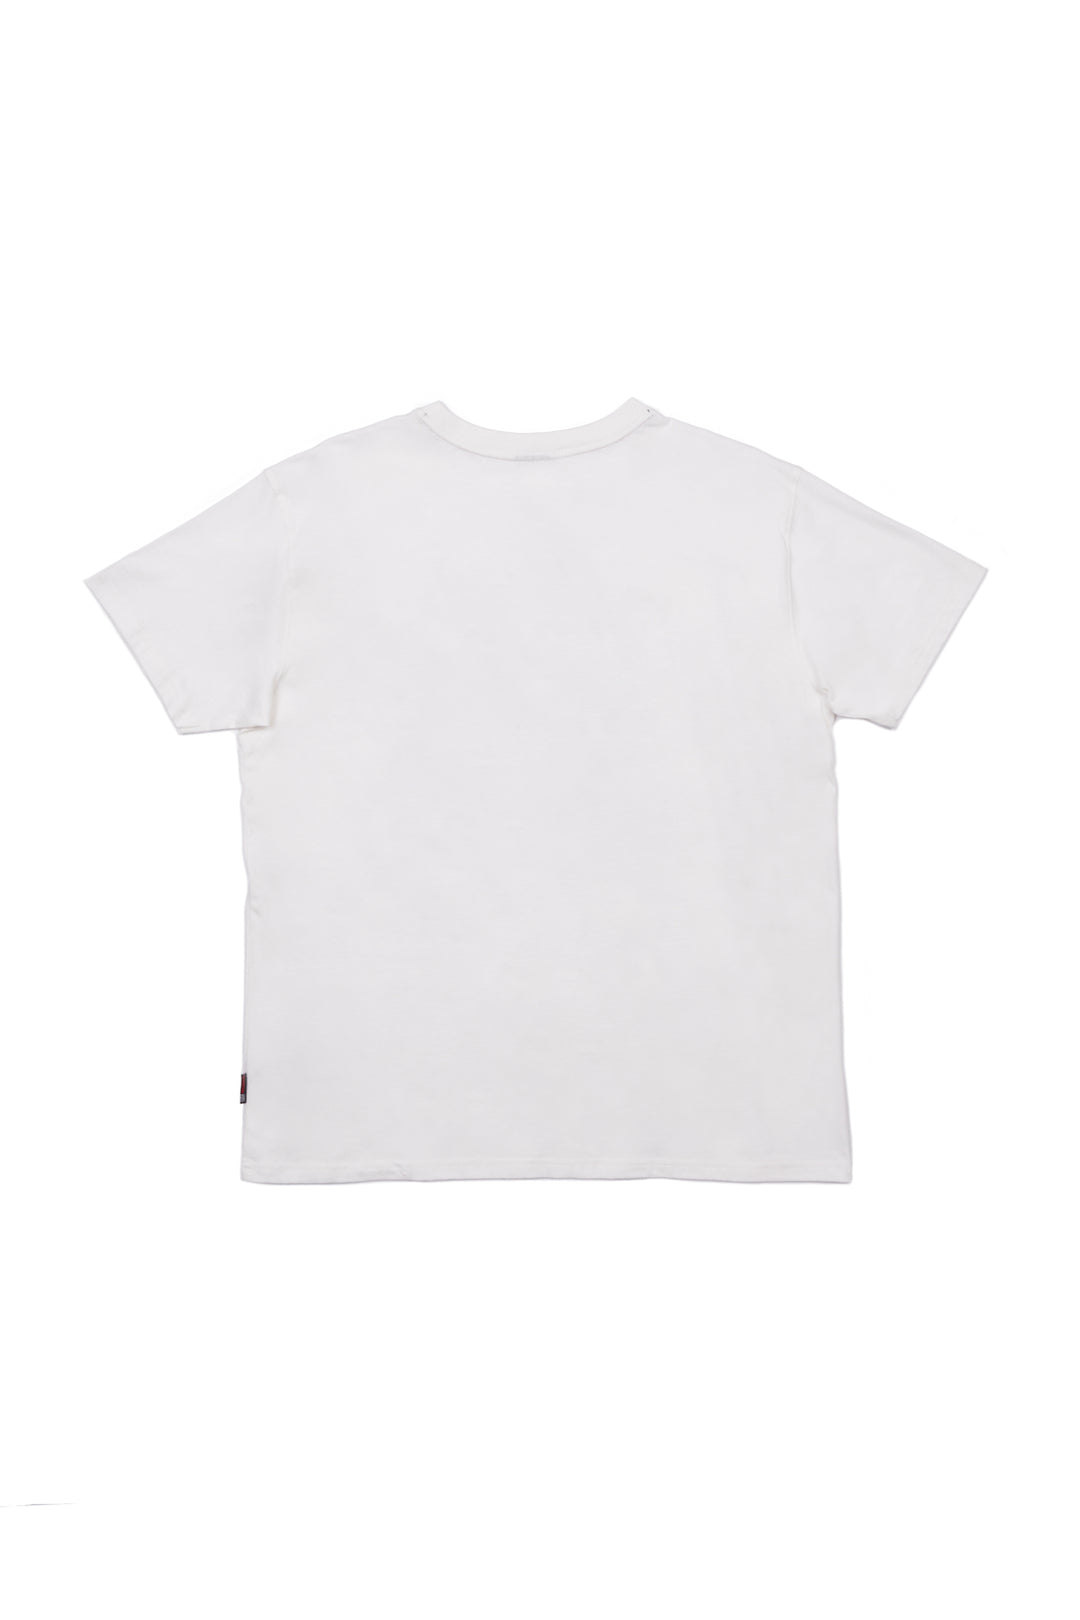 Iconic Logo T-Shirt-Ivory